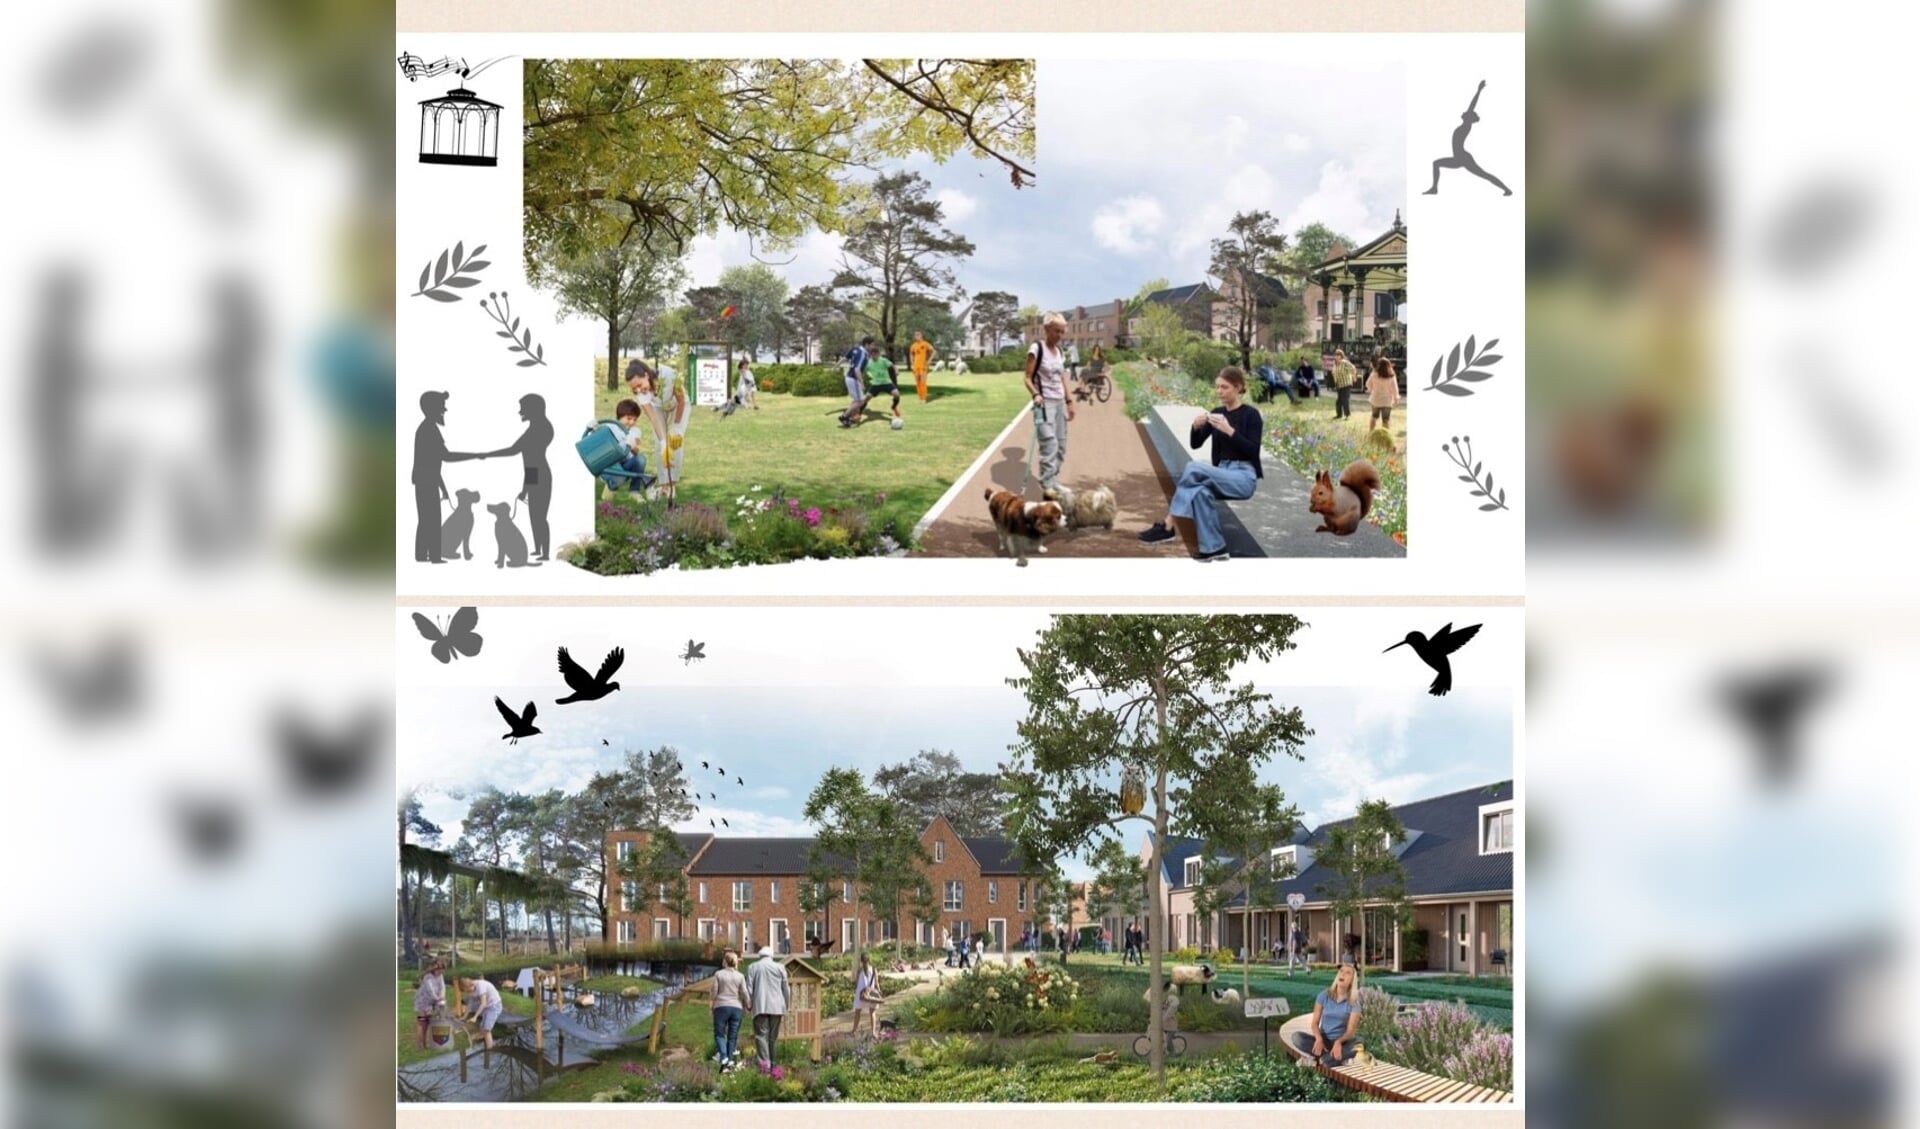 De sfeerposters voor de openbare ruimte in het plangebied (variant A en variant B) worden geplaatst op www.samenwerkenaanheerde.nl. 